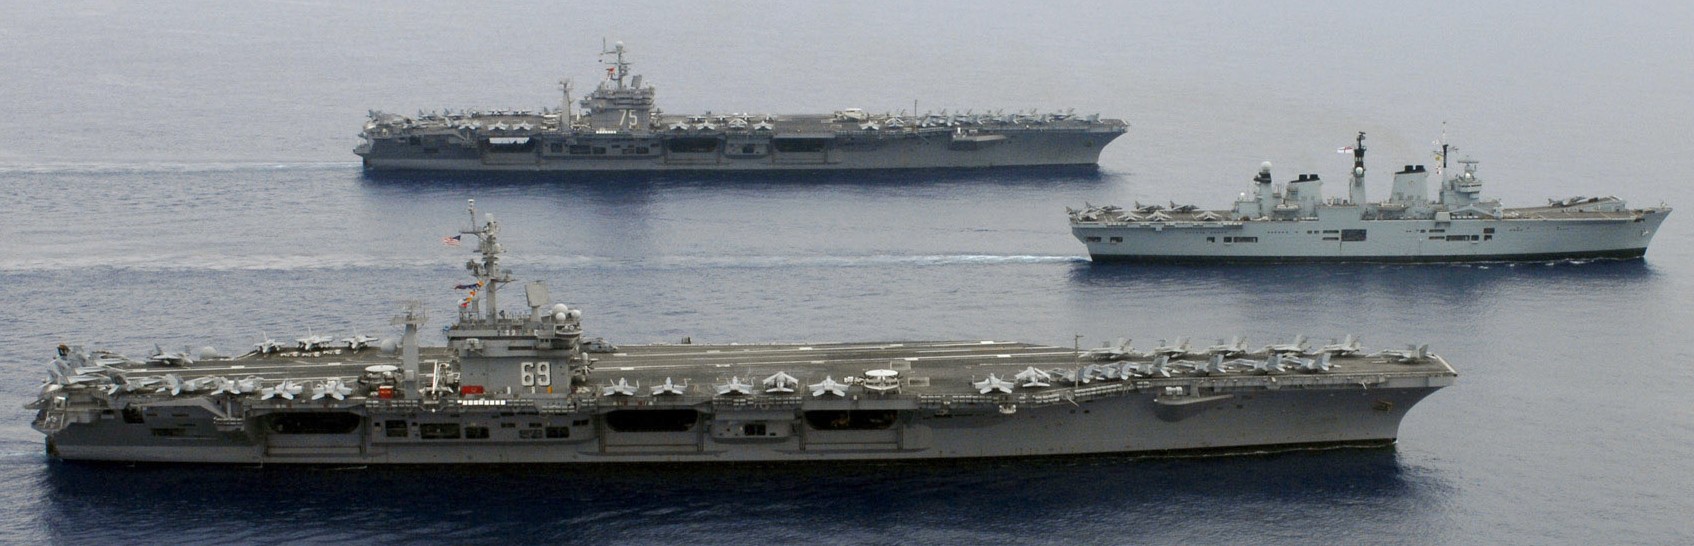 uss dwight d. eisenhower cvn-69 aircraft carrier 2007 189